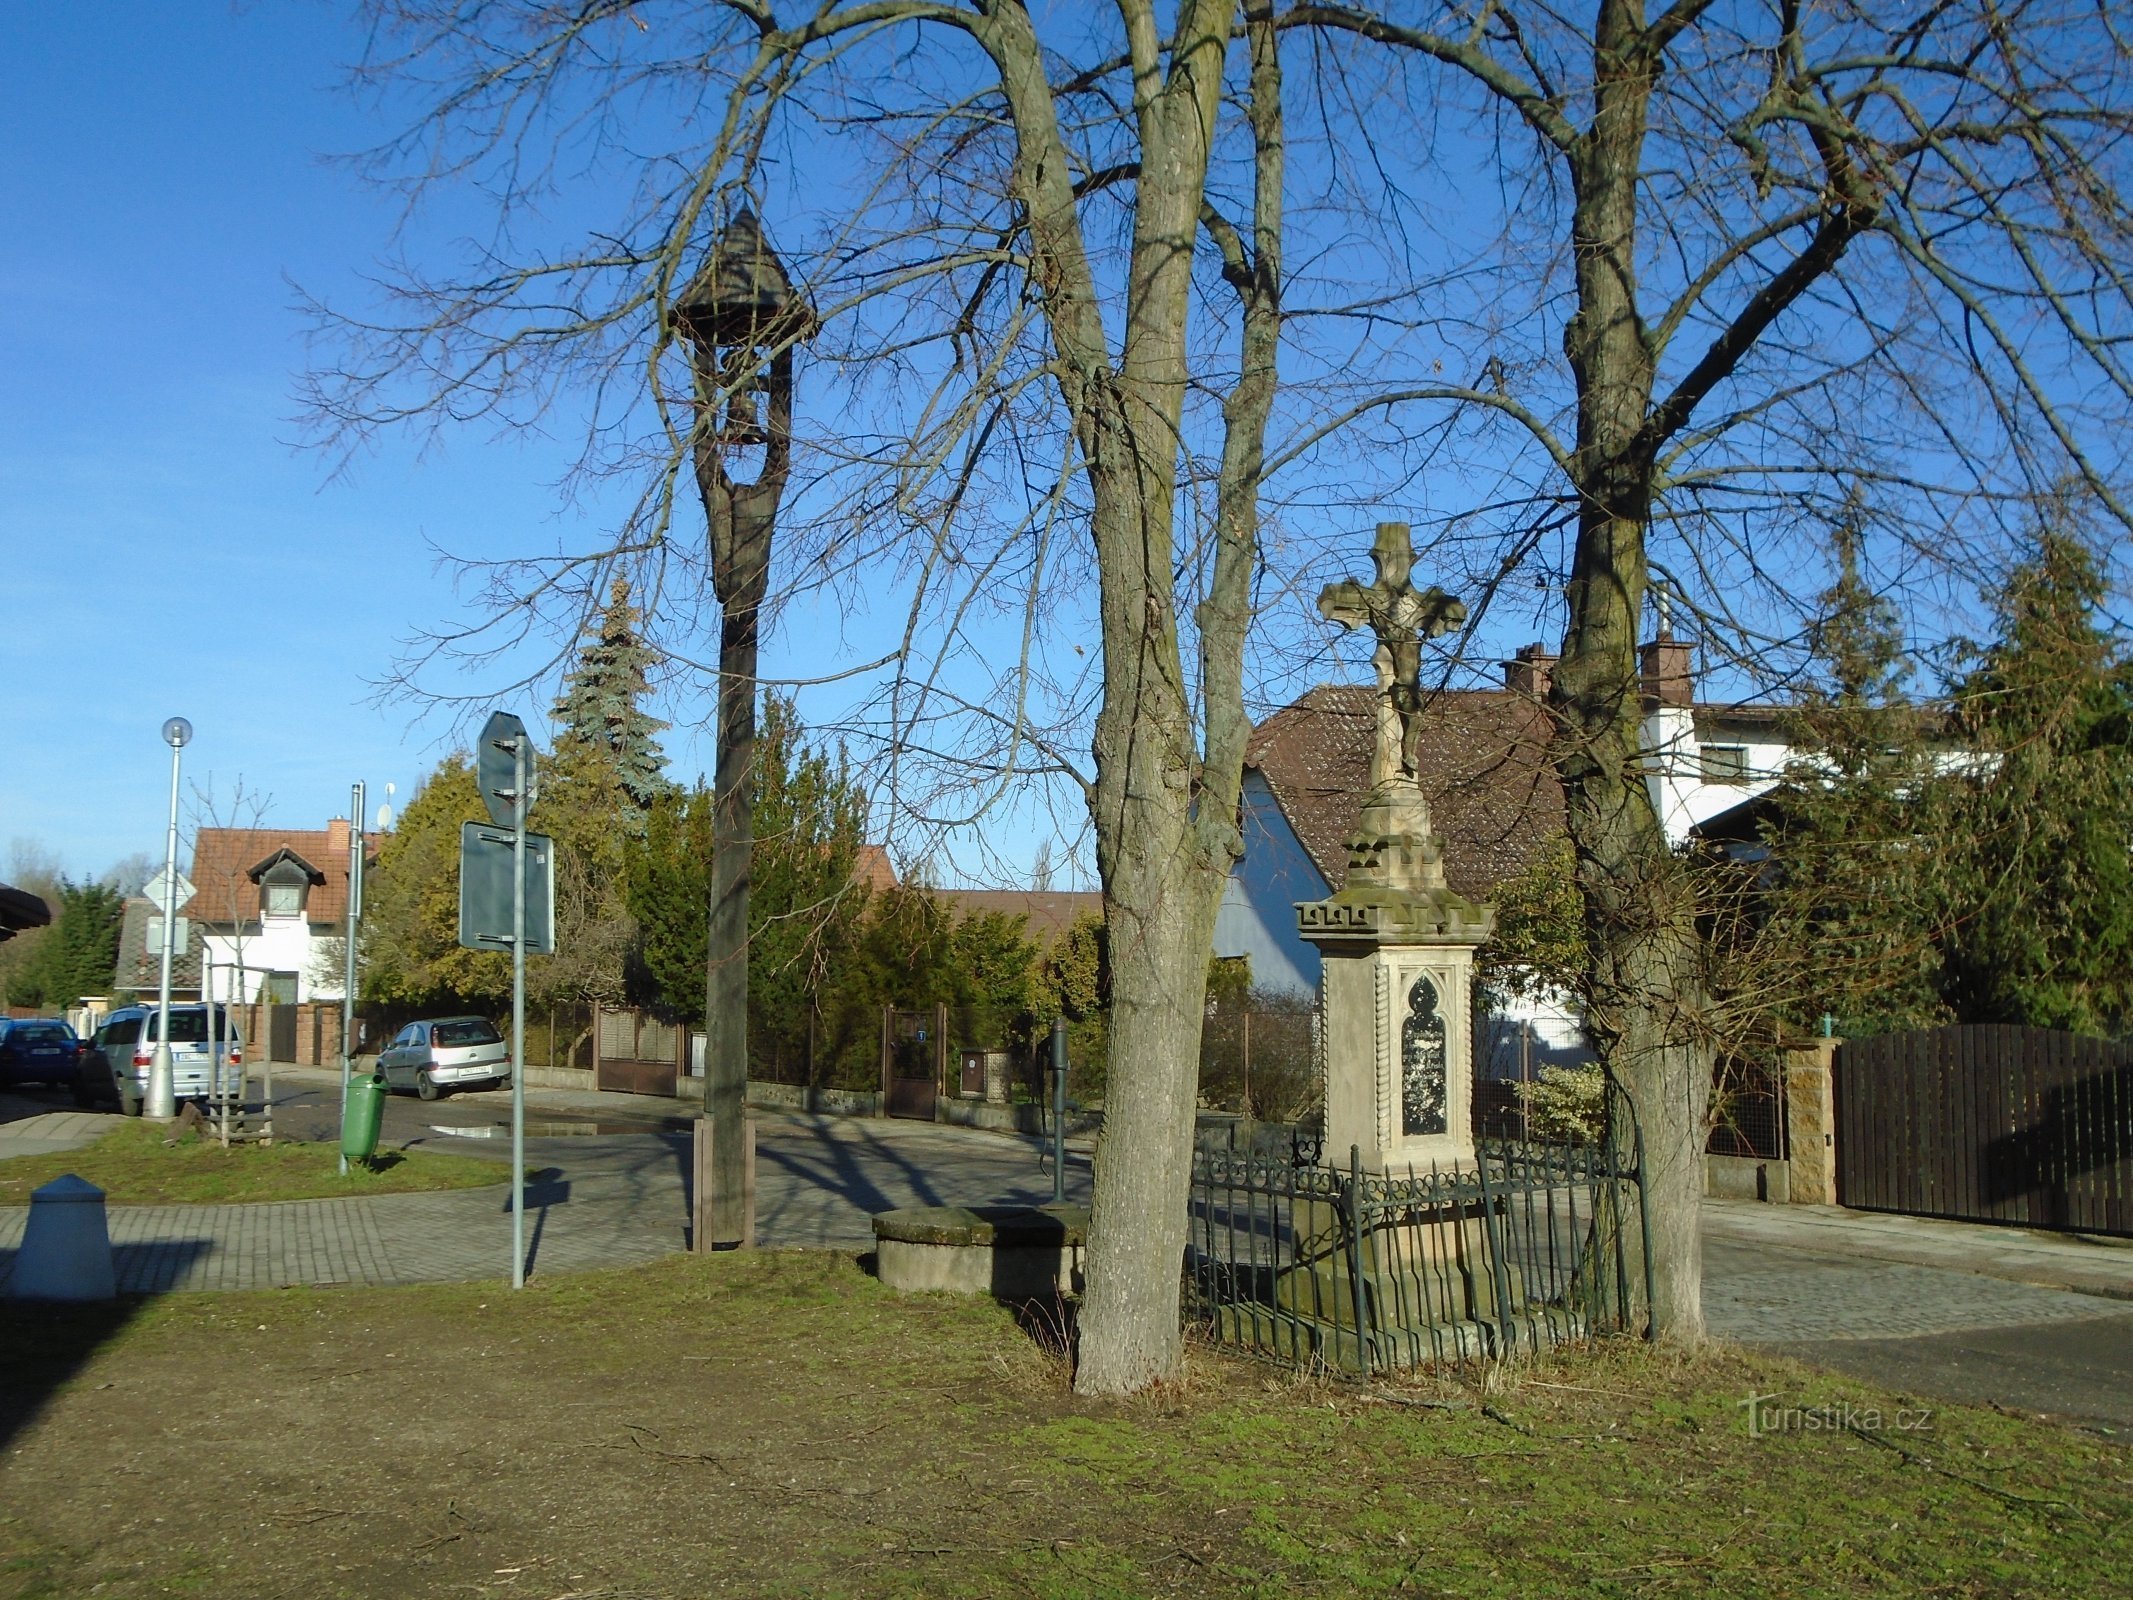 Zvonička a kříž v Machkově ulici (Třebeš)